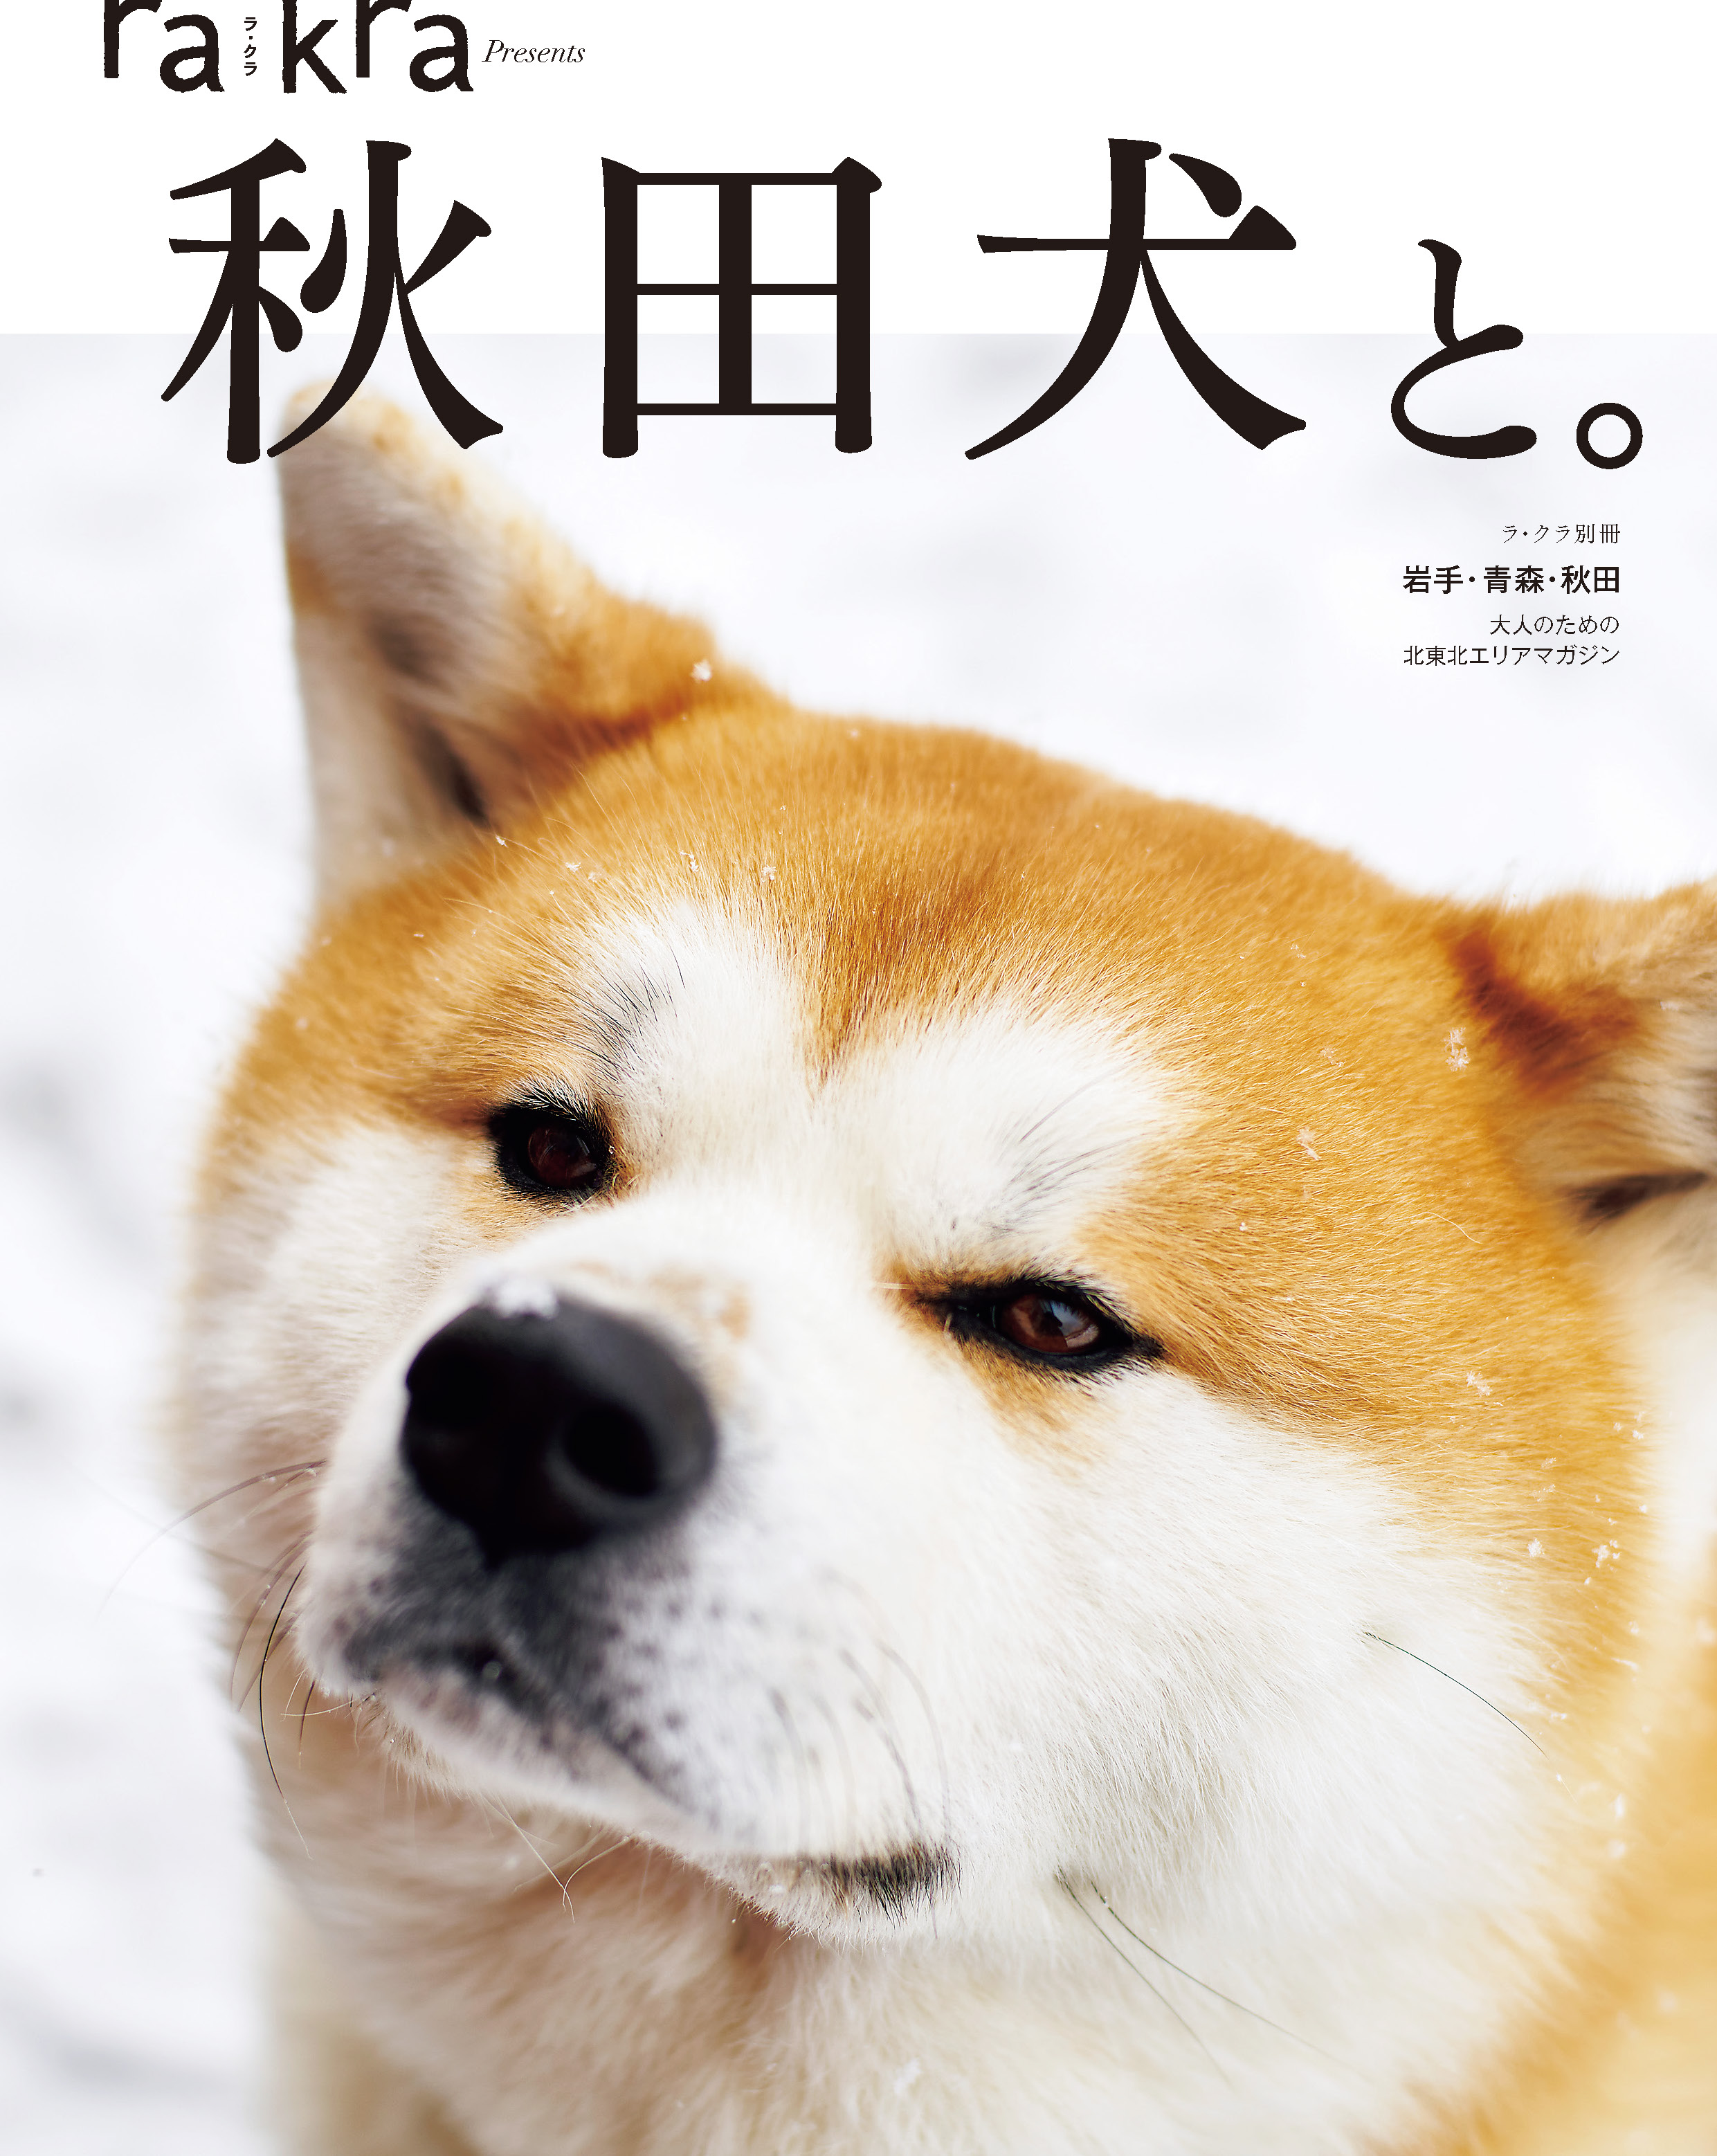 別冊「秋田犬と。」が、大人のための北東北エリアマガジン「rakra(ラ・クラ)」から発売されました。